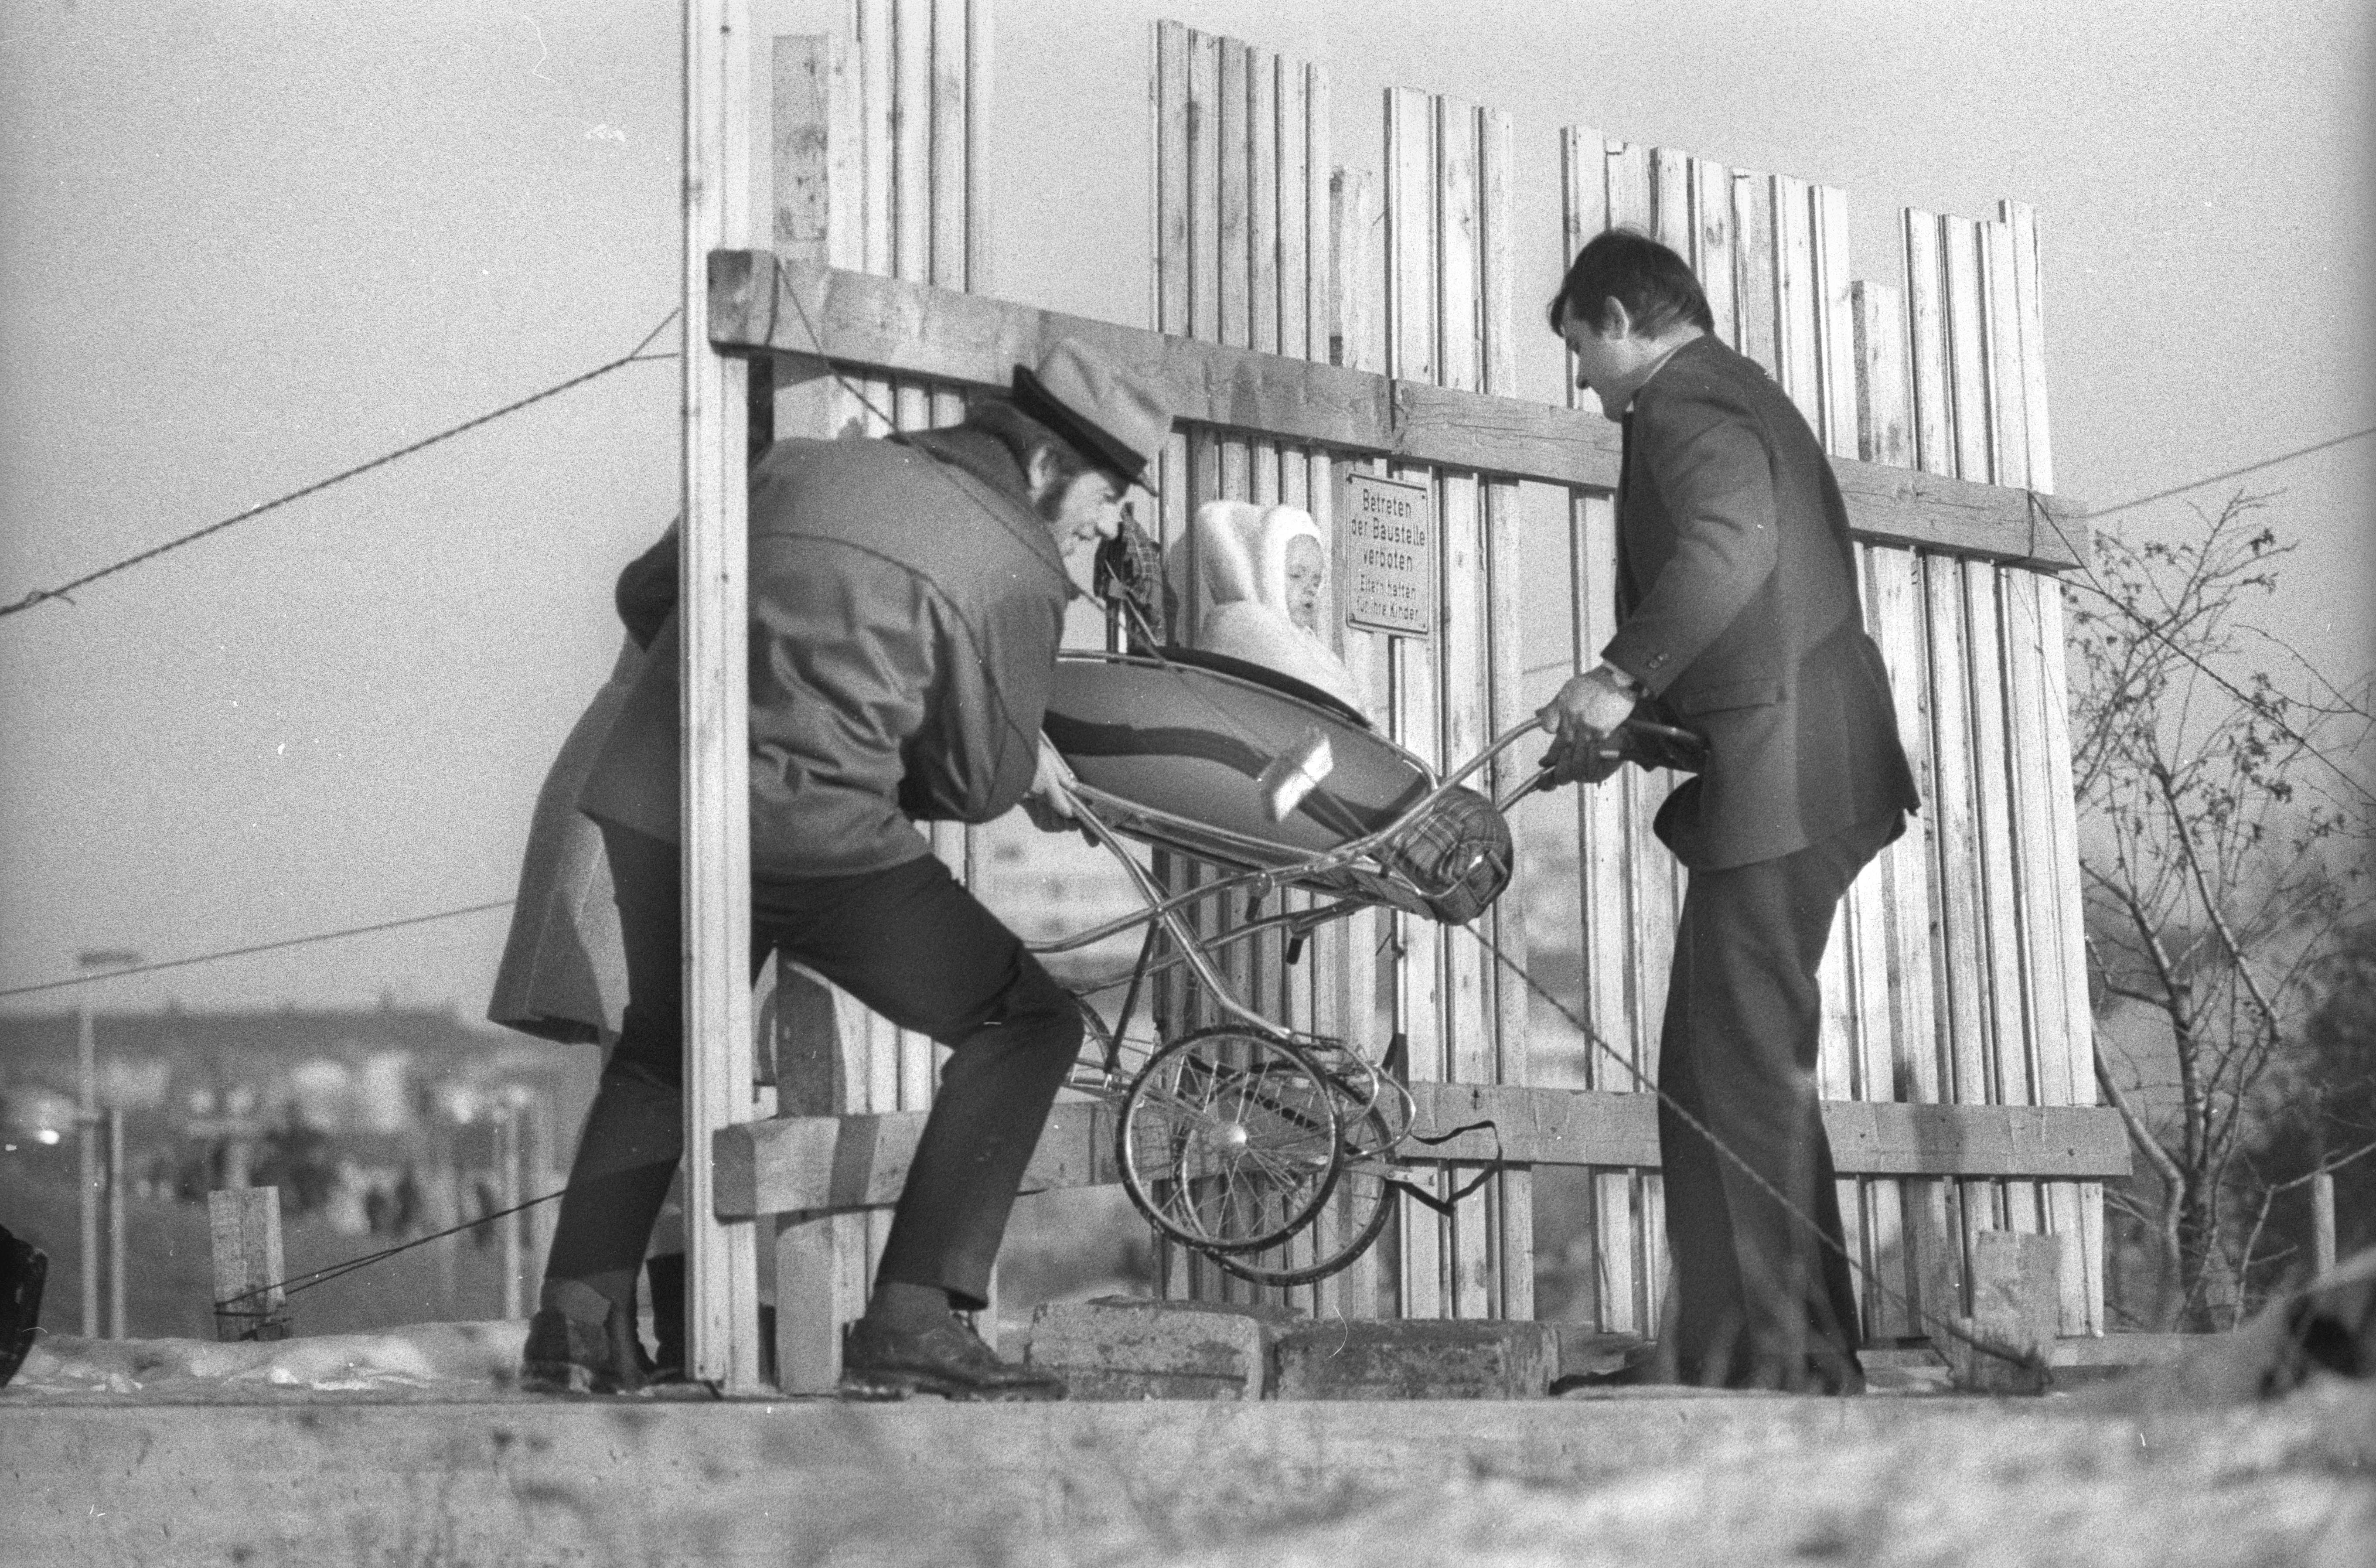 Baustelle auf dem Olympiagelände, 1970. Ein Kinderwagen wird durch den Zaun mit Schild "Betreten verboten" gehoben.